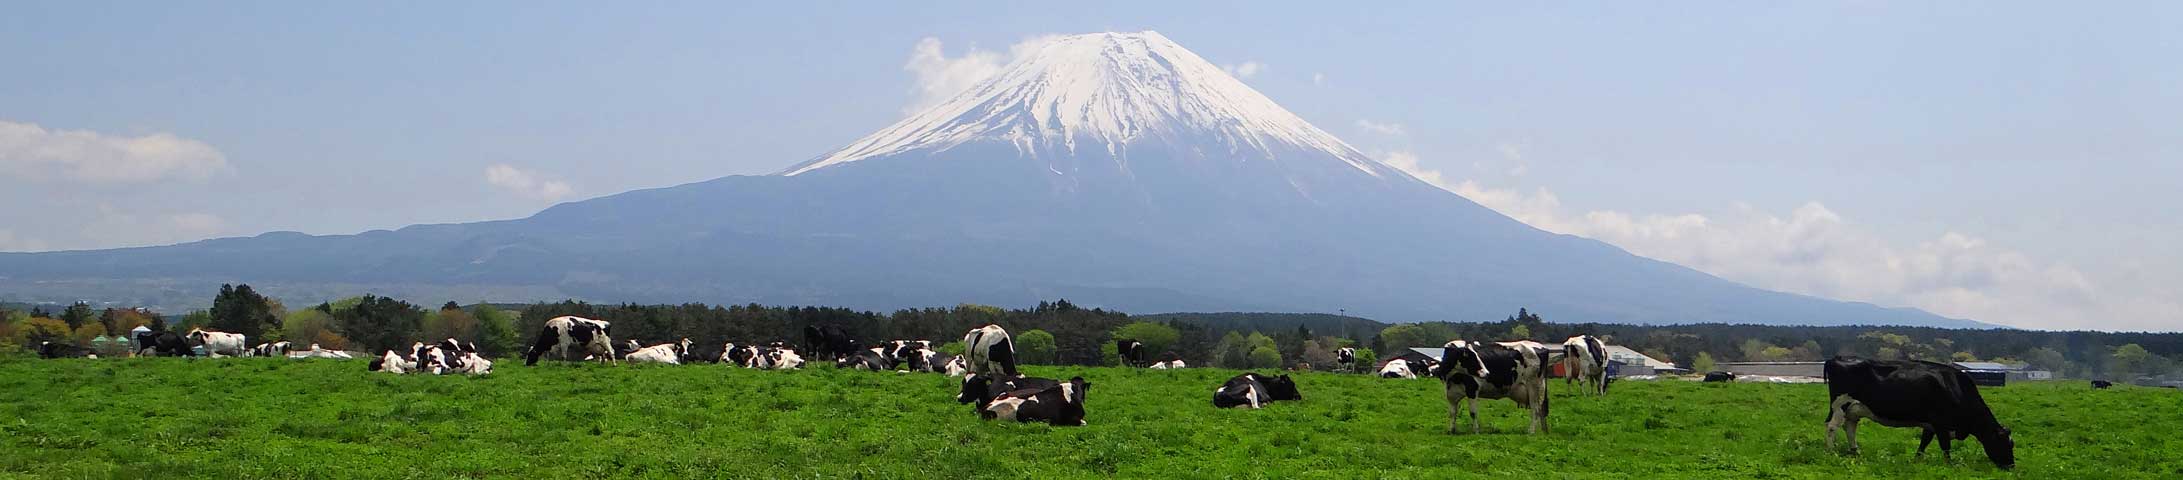 番外写真館初夏の富士山麓1｜ホッキョクグマと三角コーン